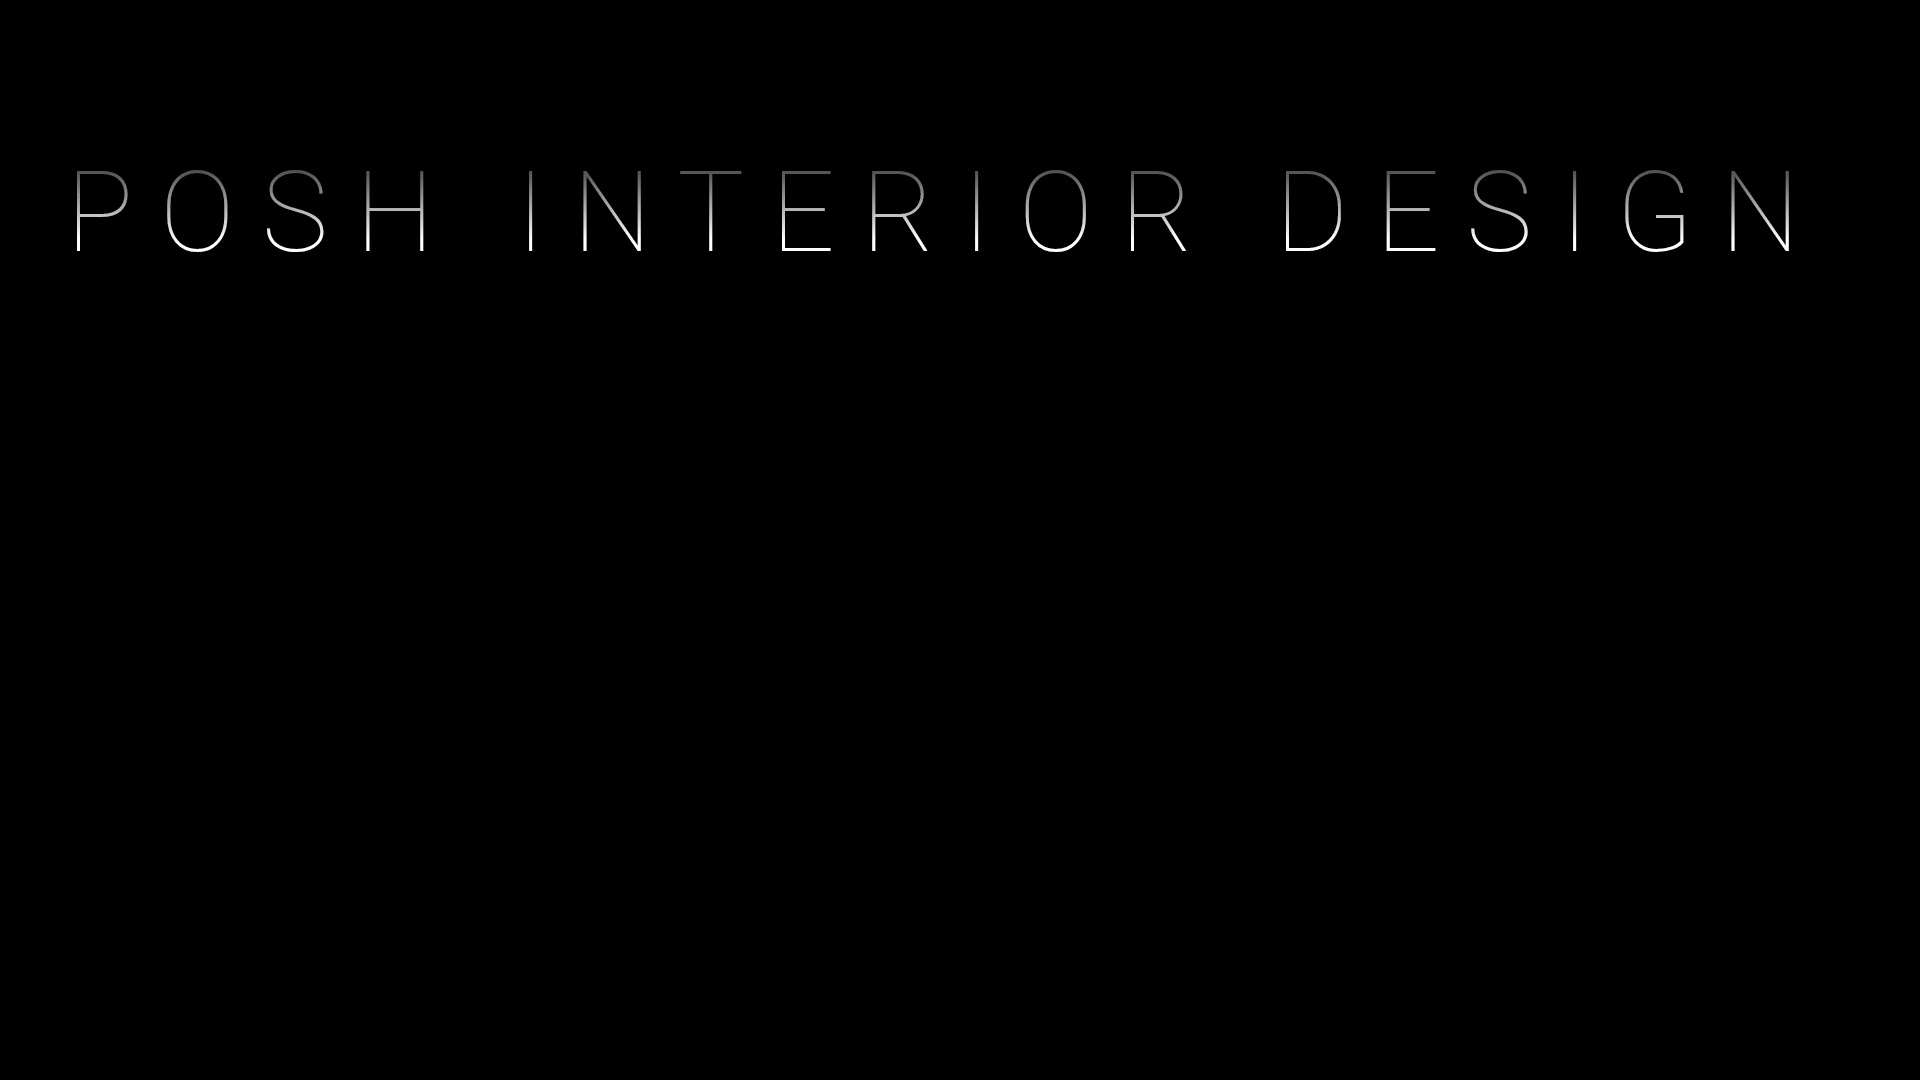 POSH INTERIOR DESIGN 
9744371677
 #InteriorDesigner